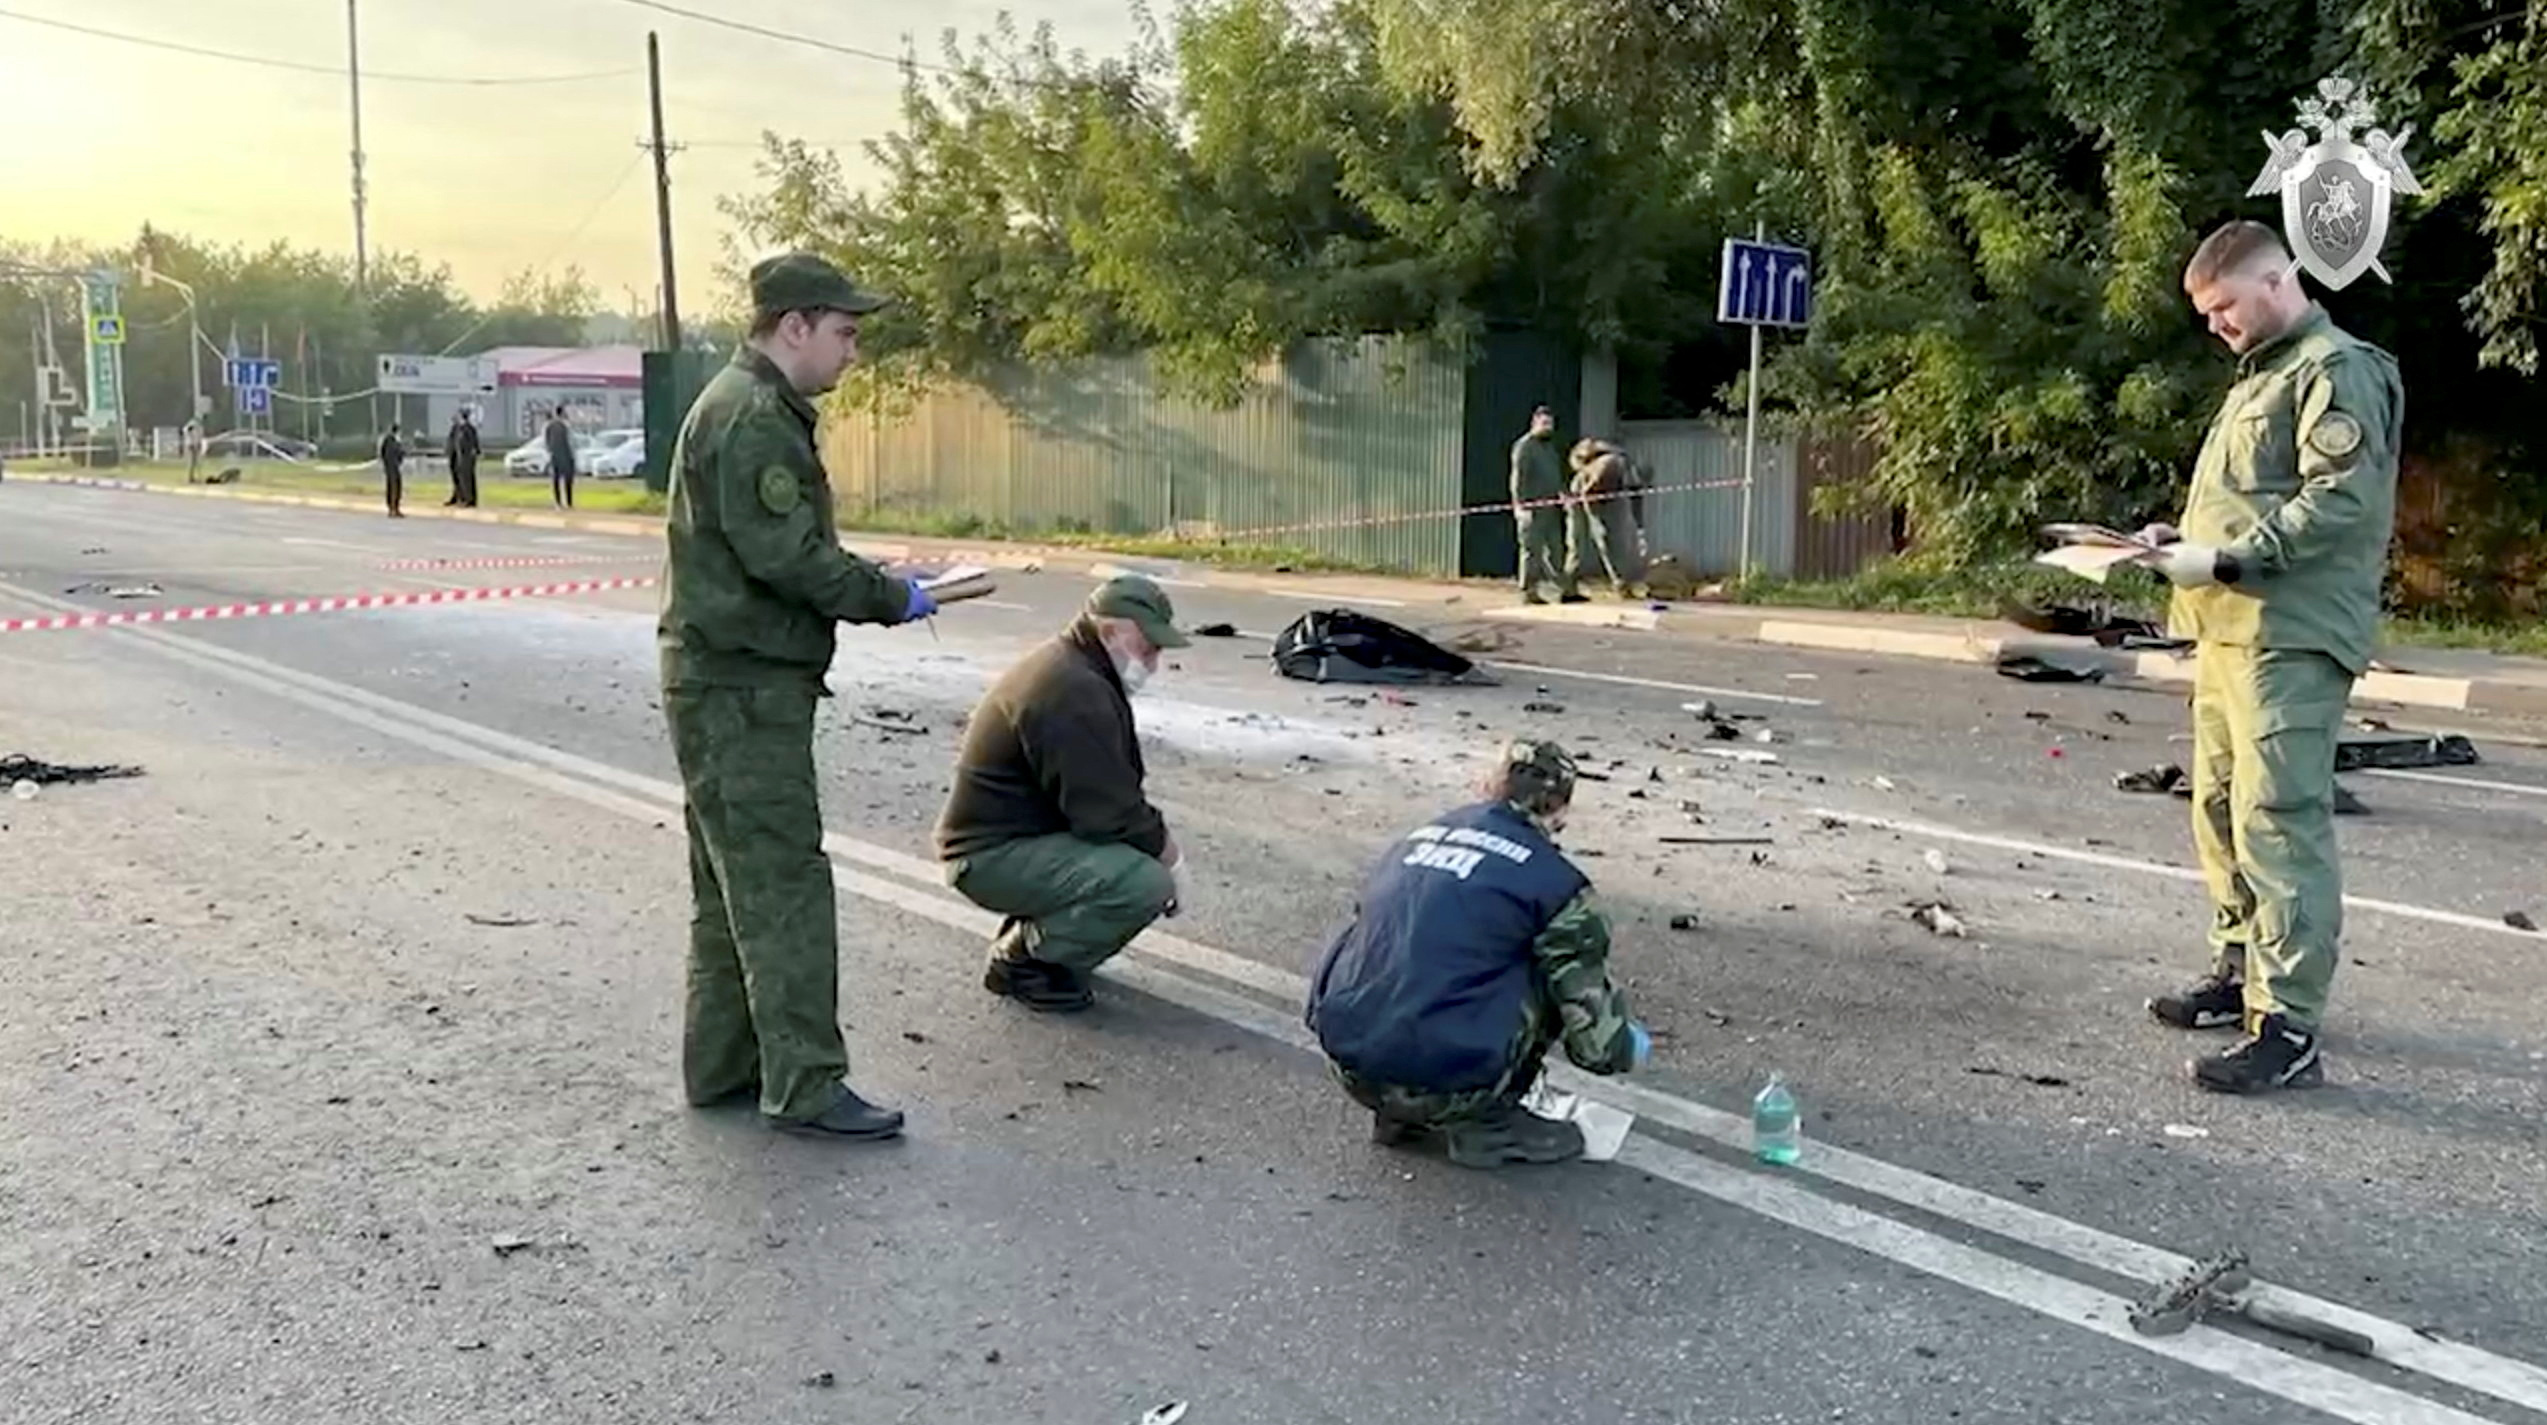 Investigadores trabajan en el lugar del atentado, en la región de Moscú (via Reuters)